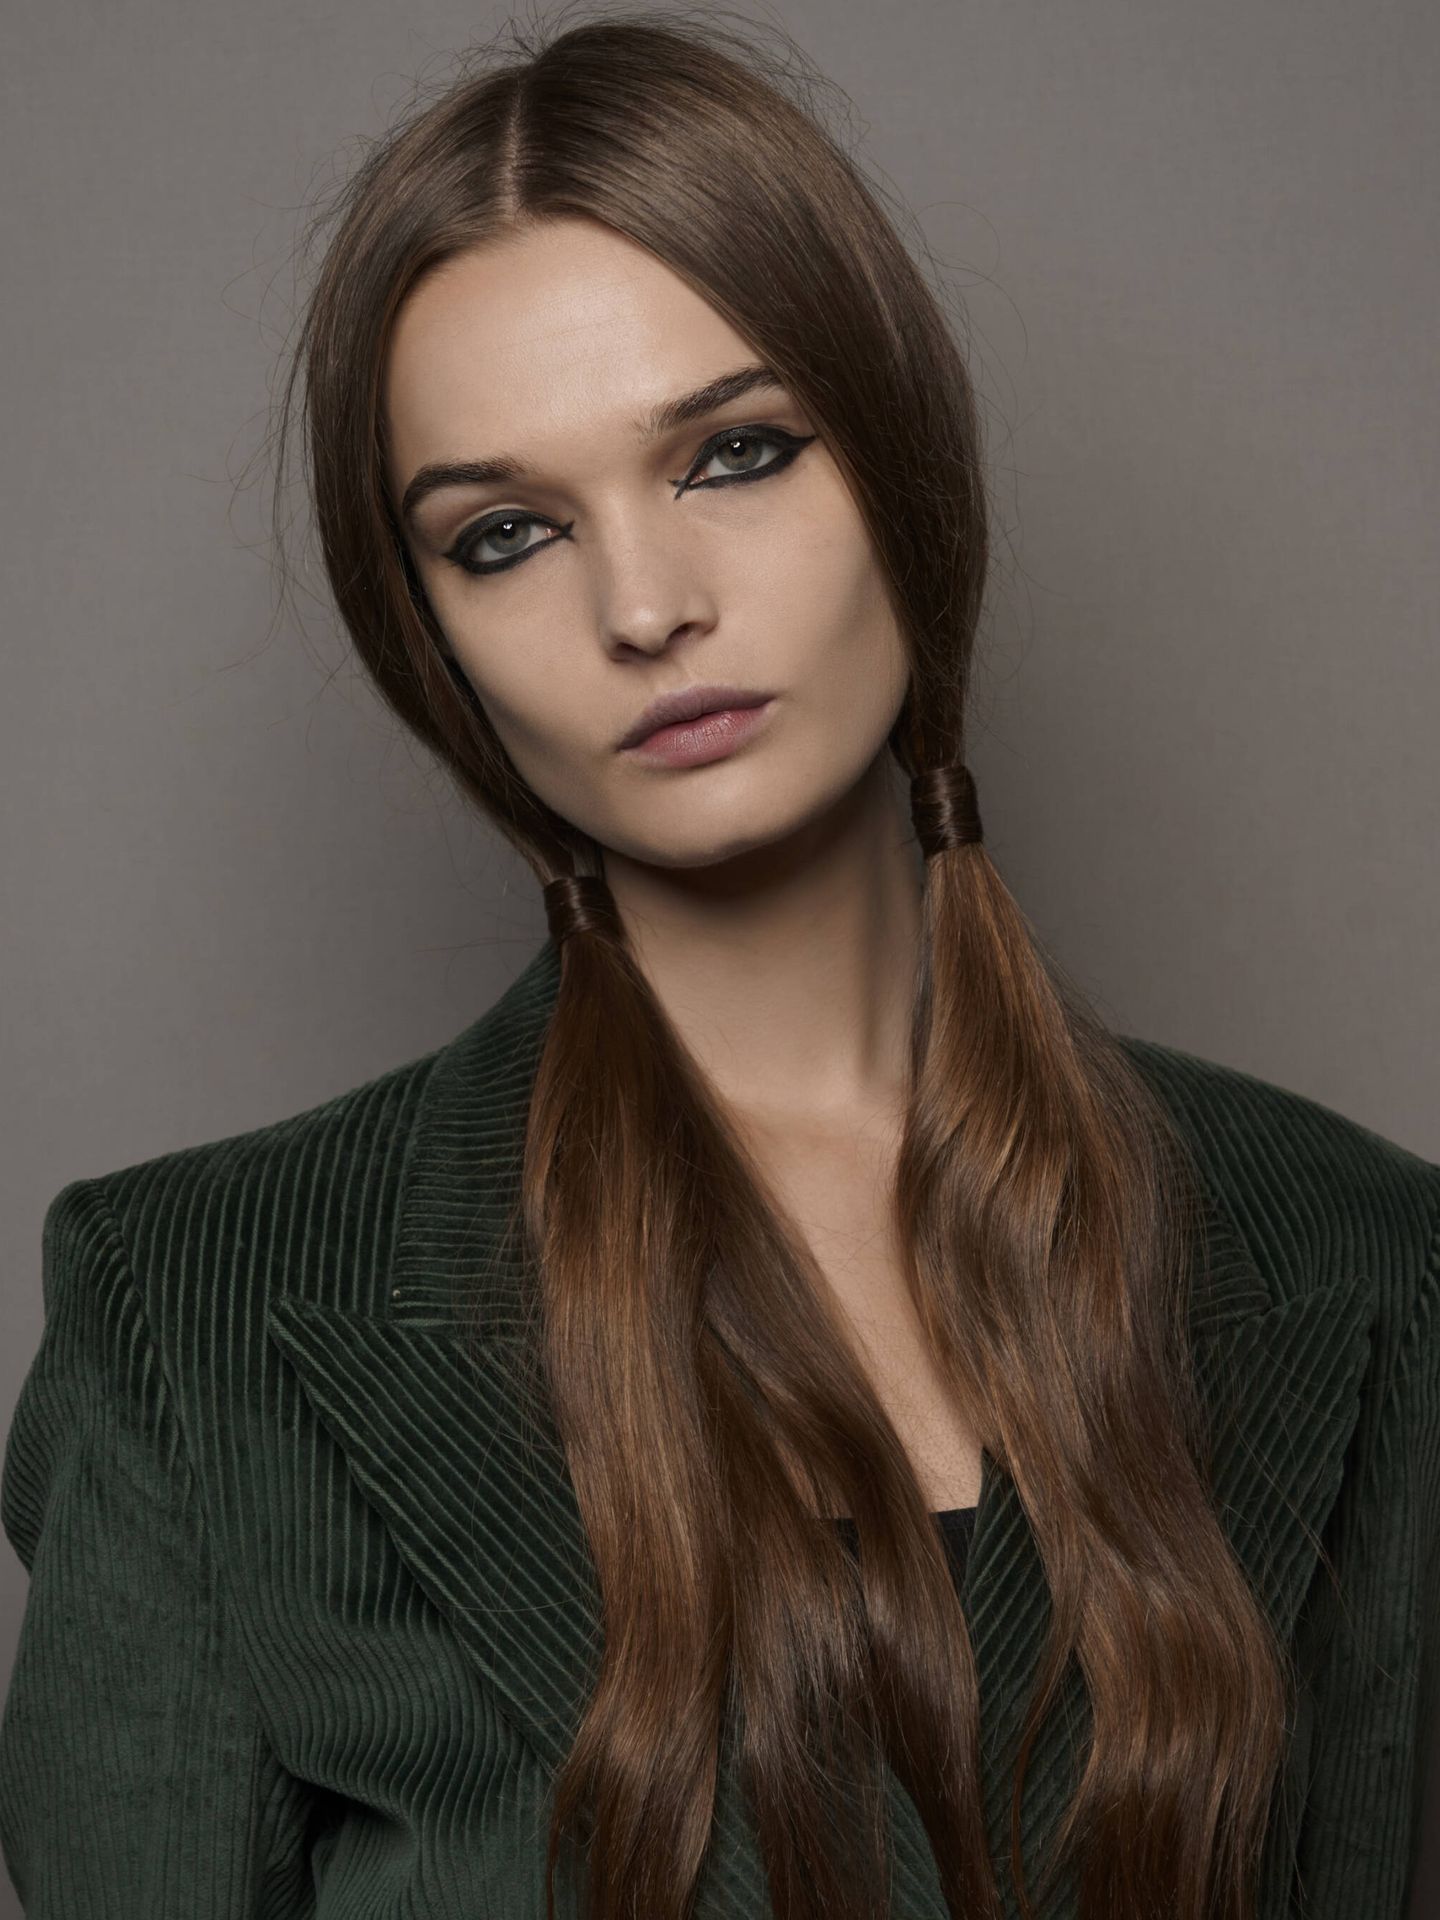 La propuesta de Dior para la primavera-verano 2023 combinaba el eyeliner cruzado de inspiración retro con peinados 2000. (Imaxtree)